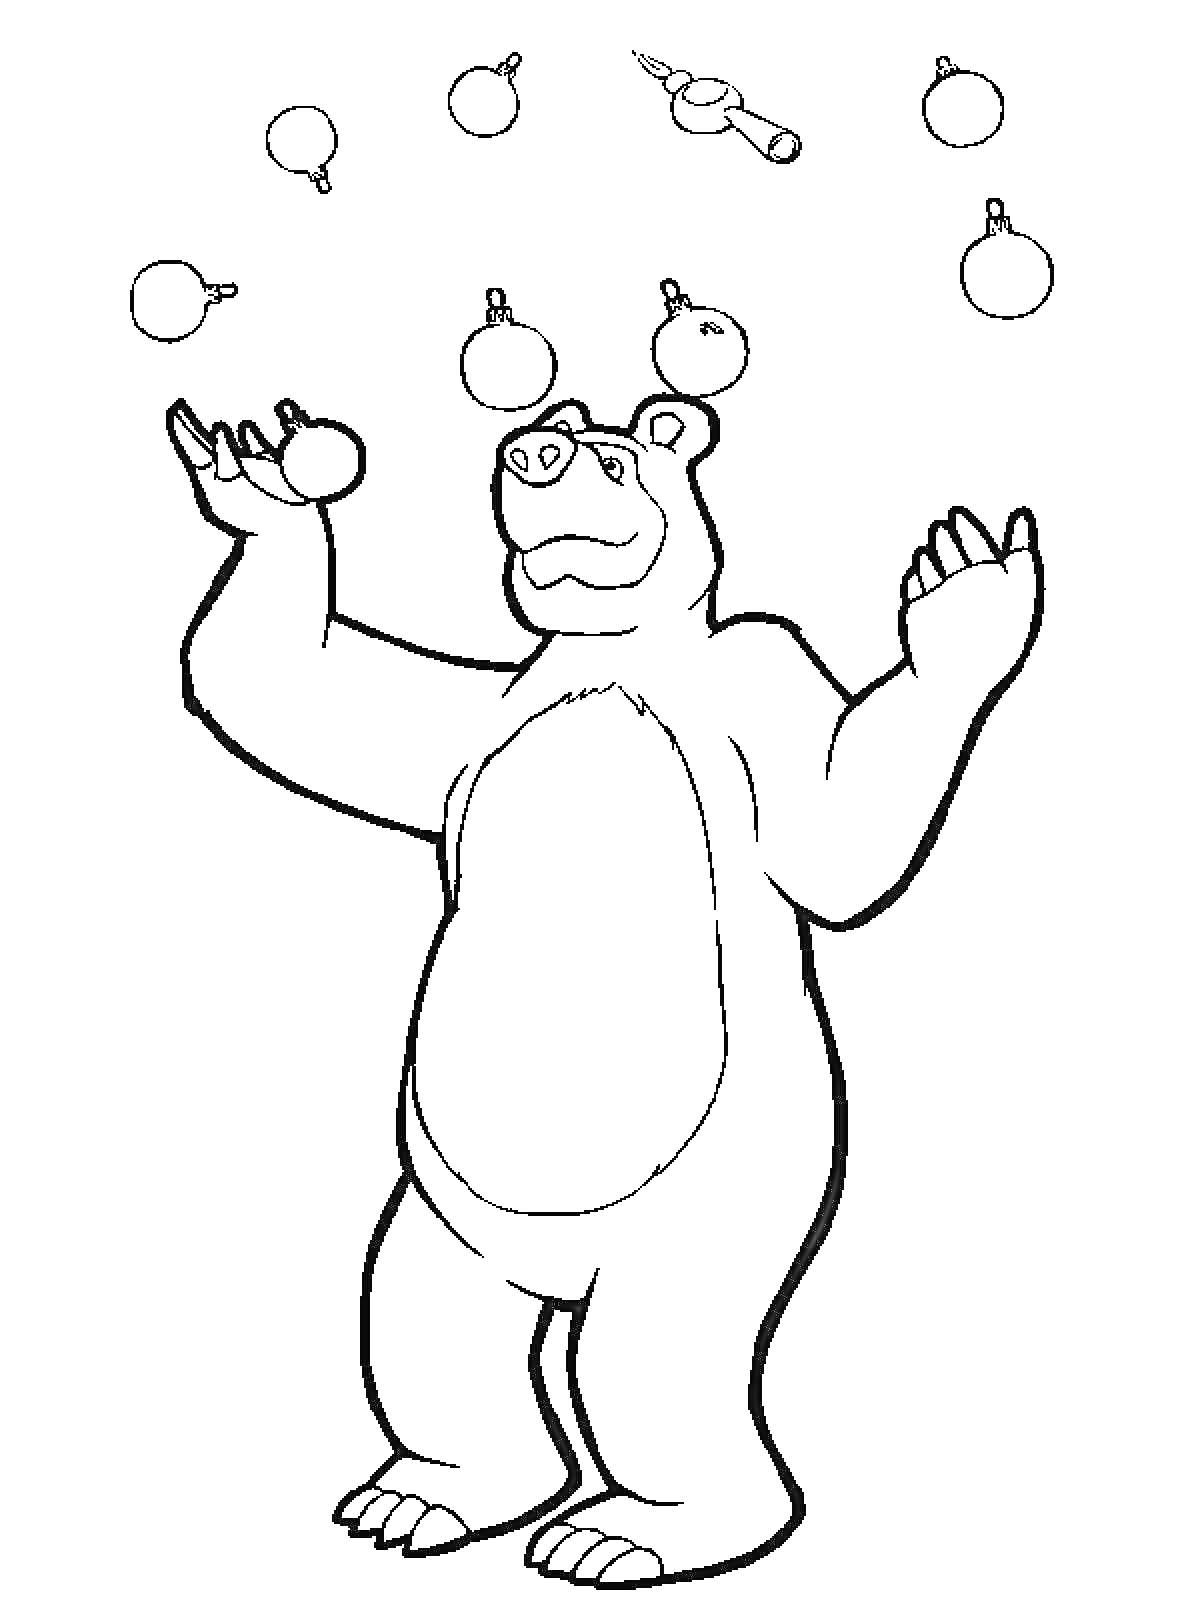 Медведь жонглирует игрушечными ёлочными шарами и дудочкой